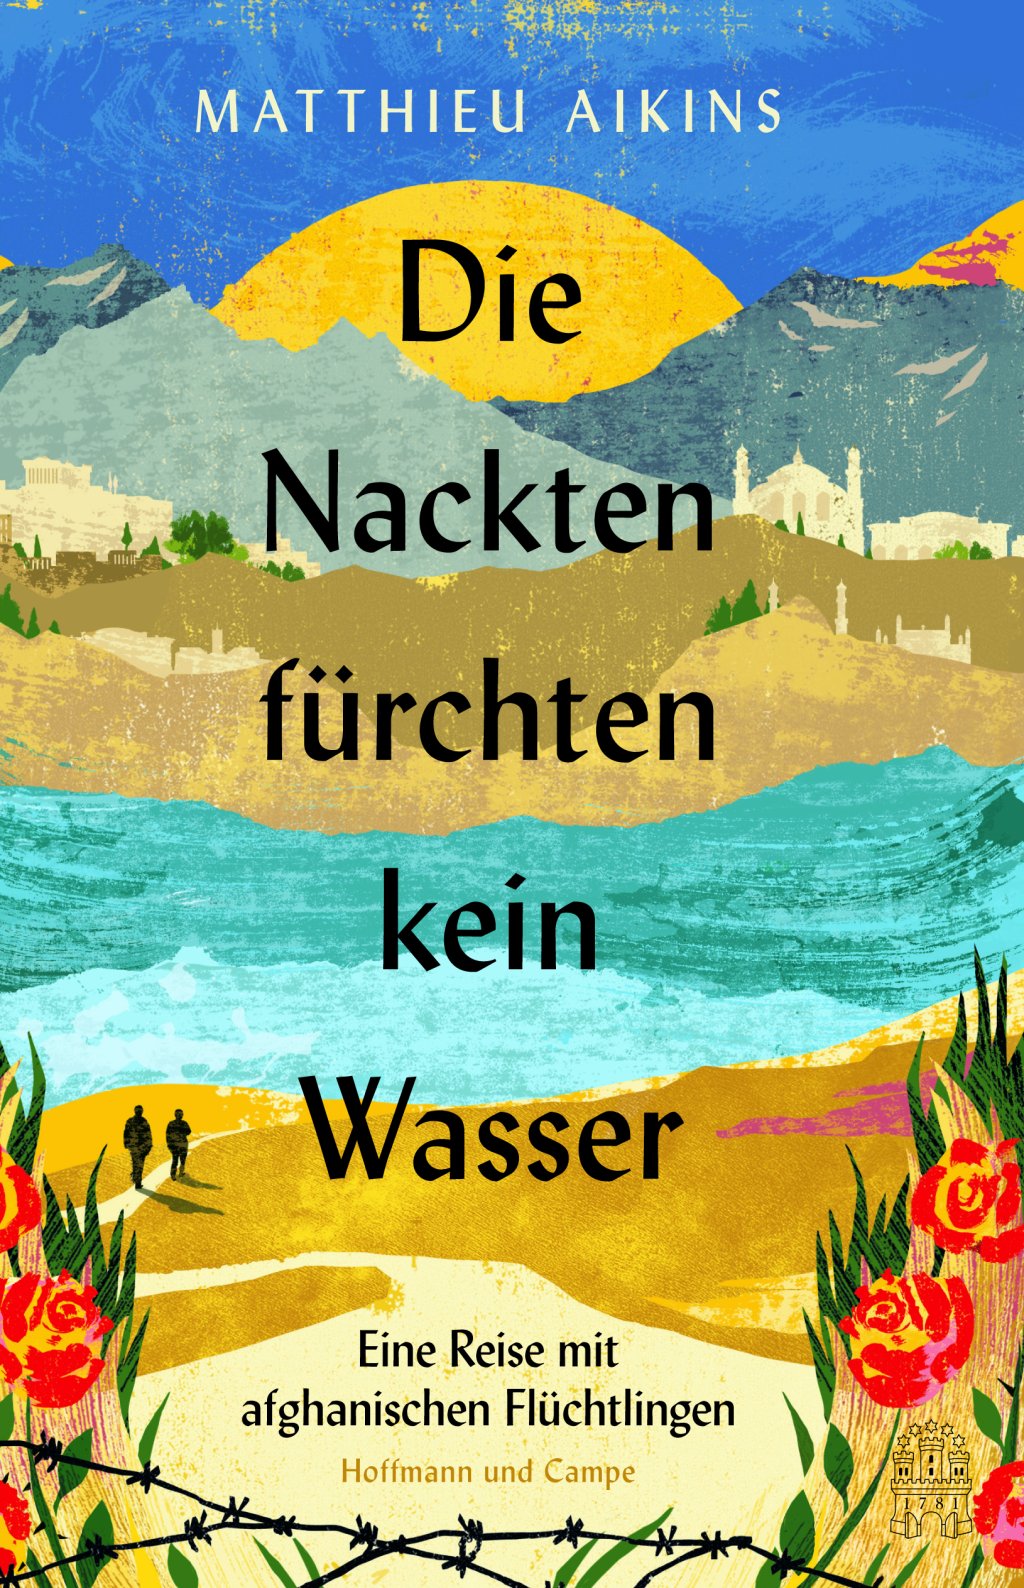 کتاب «برهنه ها از آب نمی‌ترسند» در ماه اگست سال ۲۰۲۲ در آلمان نشر شد./عکس: Hoffmann und Campe / Kiana Hayeri